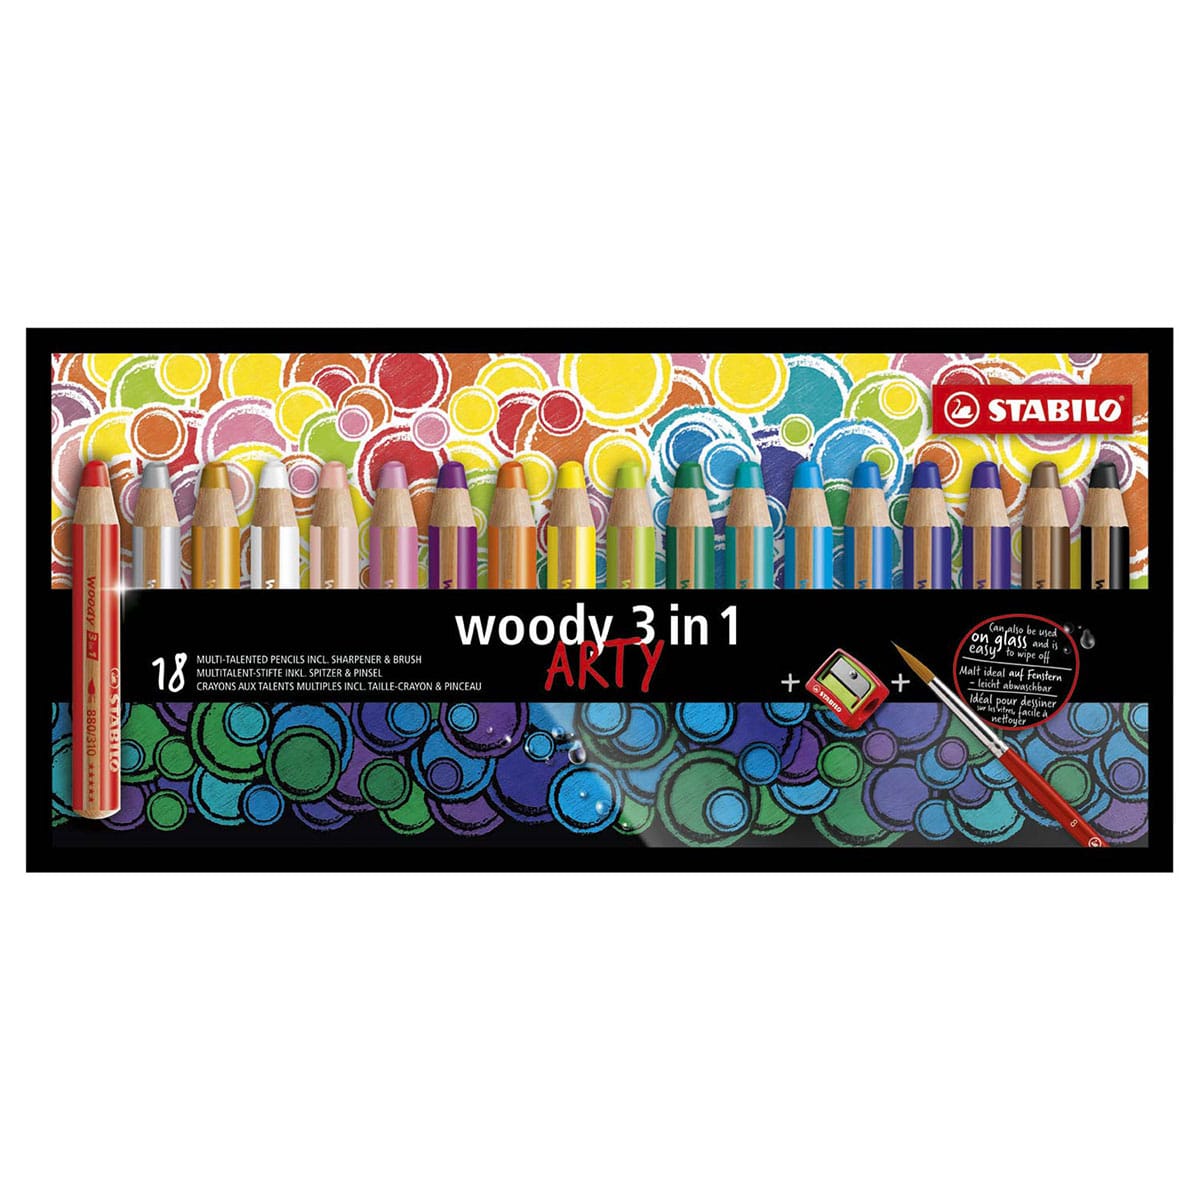 https://suitupshop.fr/wp-content/uploads/2021/10/STABILO-Woody-Kleurpotloden-set-van-18-kleuren-featured.jpg